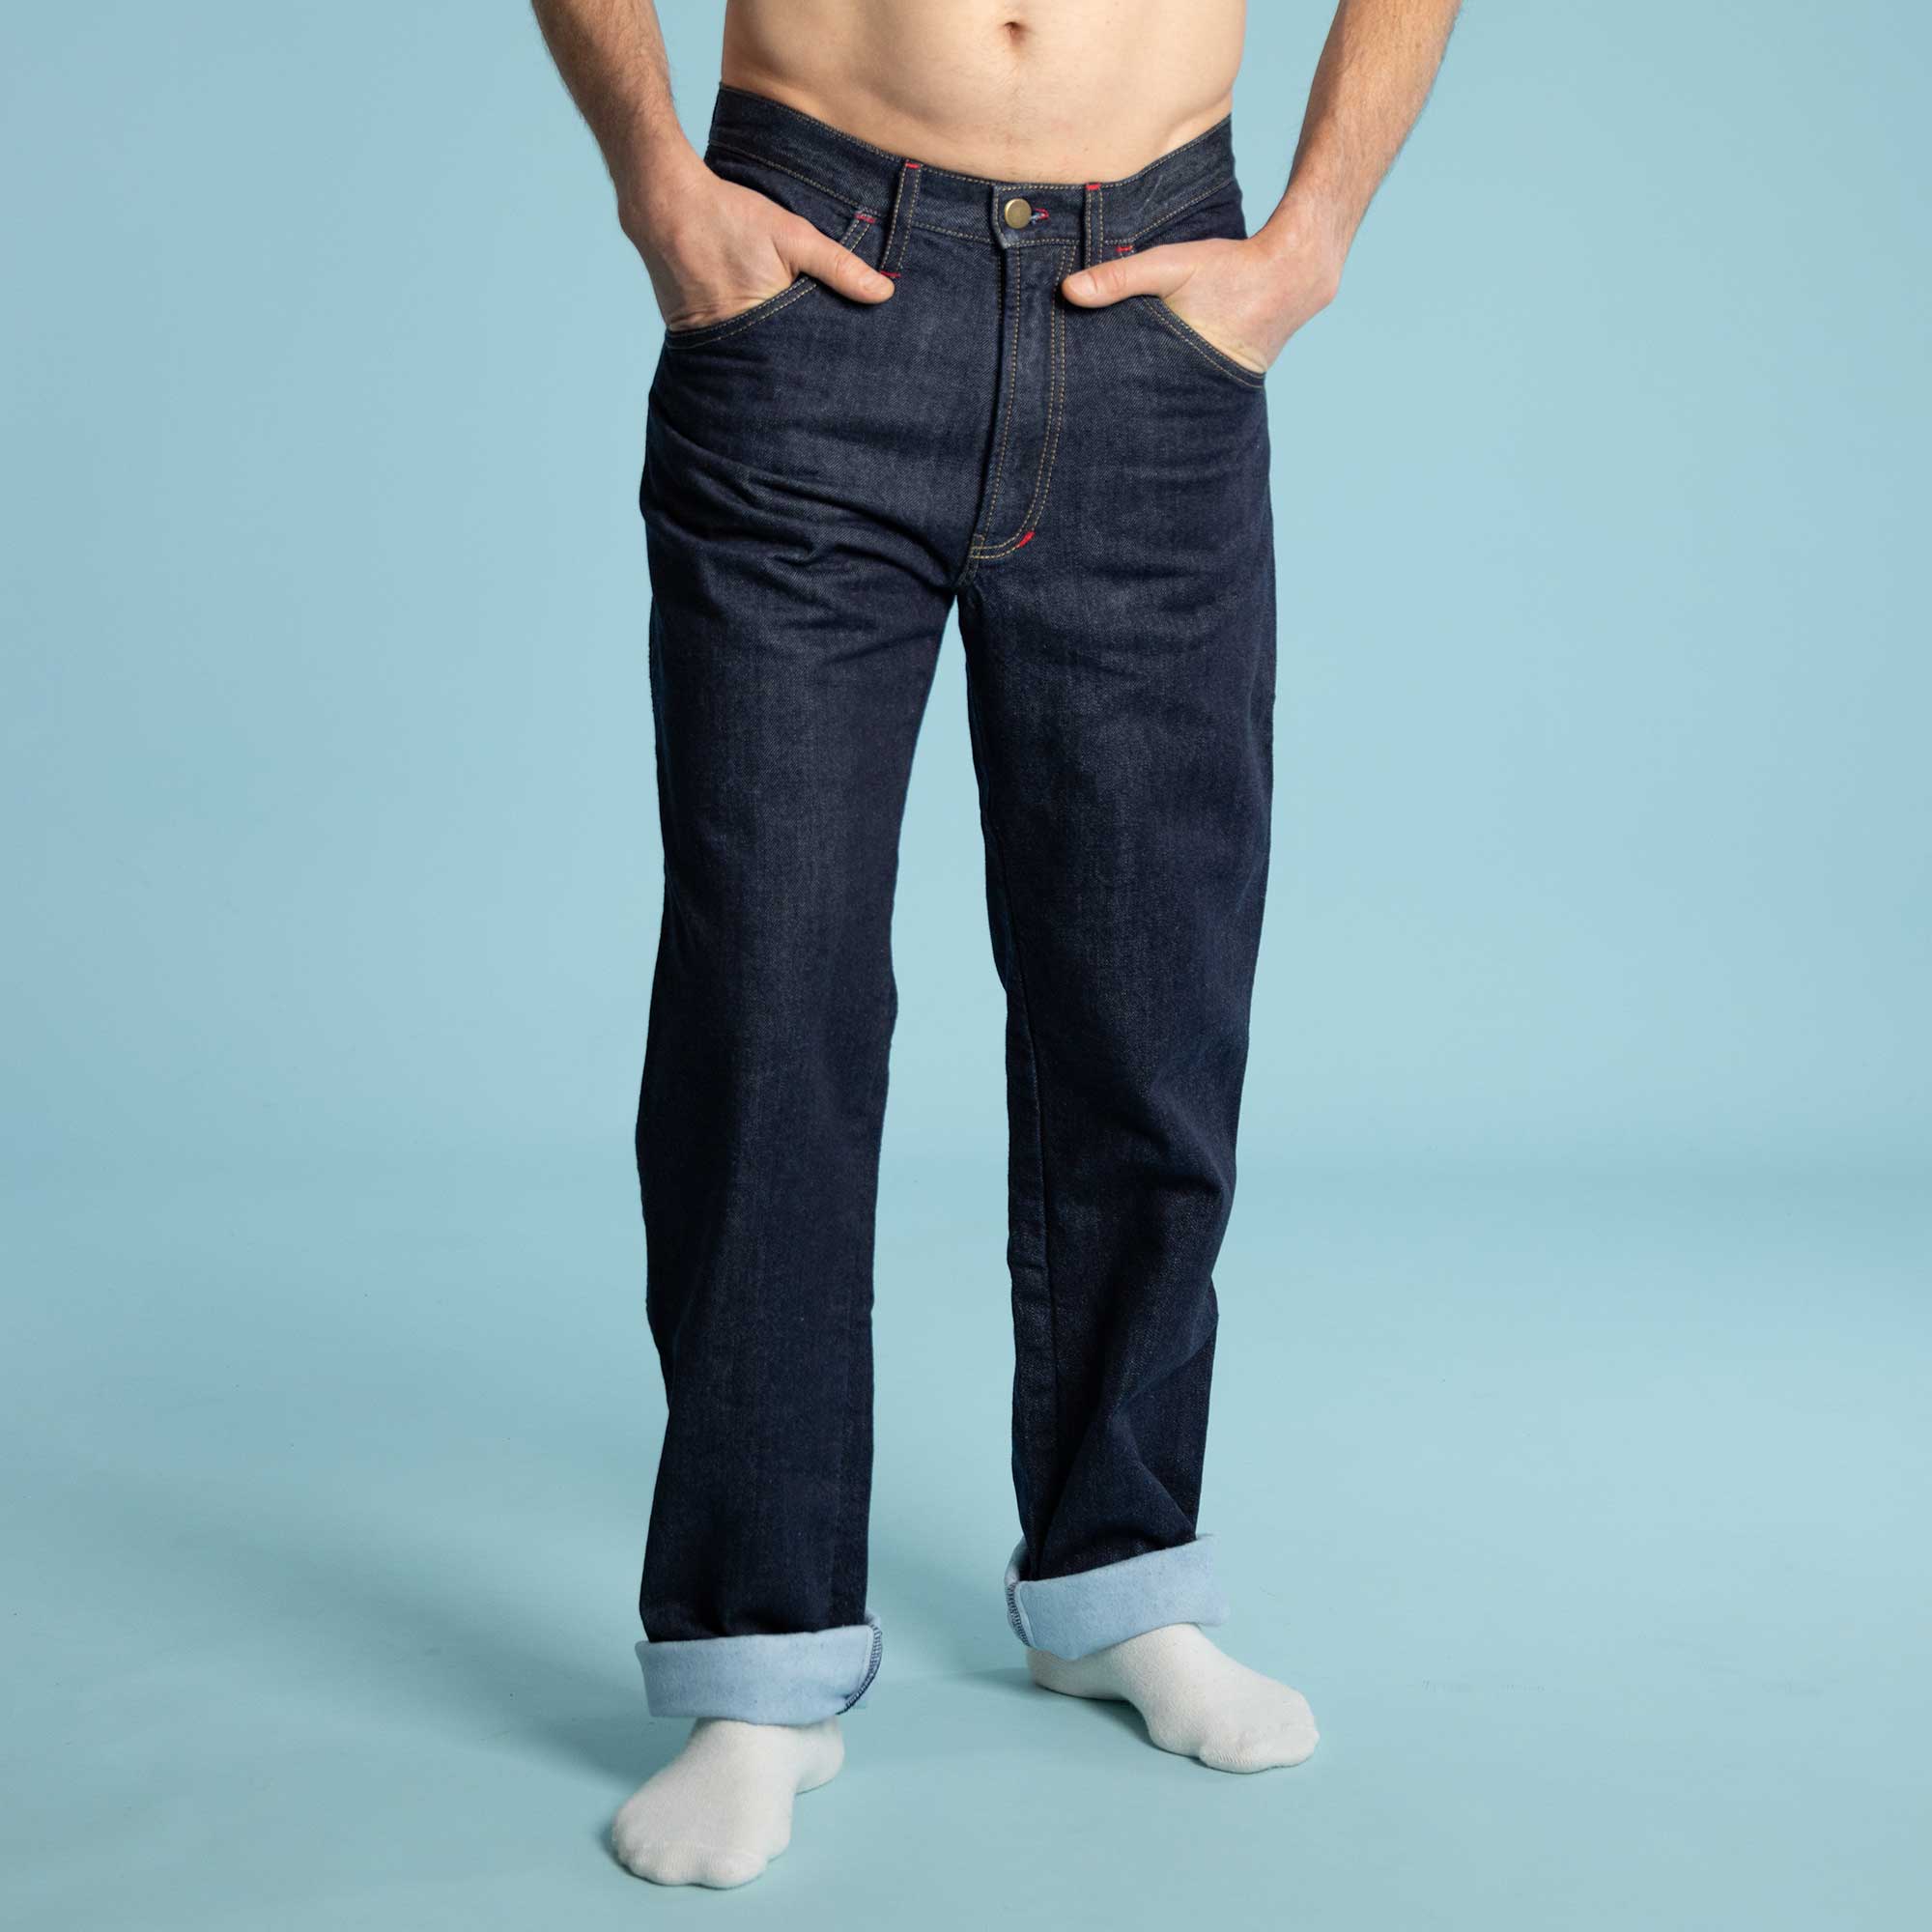 Original-Fit Blaine Flannel-Lined Jean - Jeans/Pants & Shorts